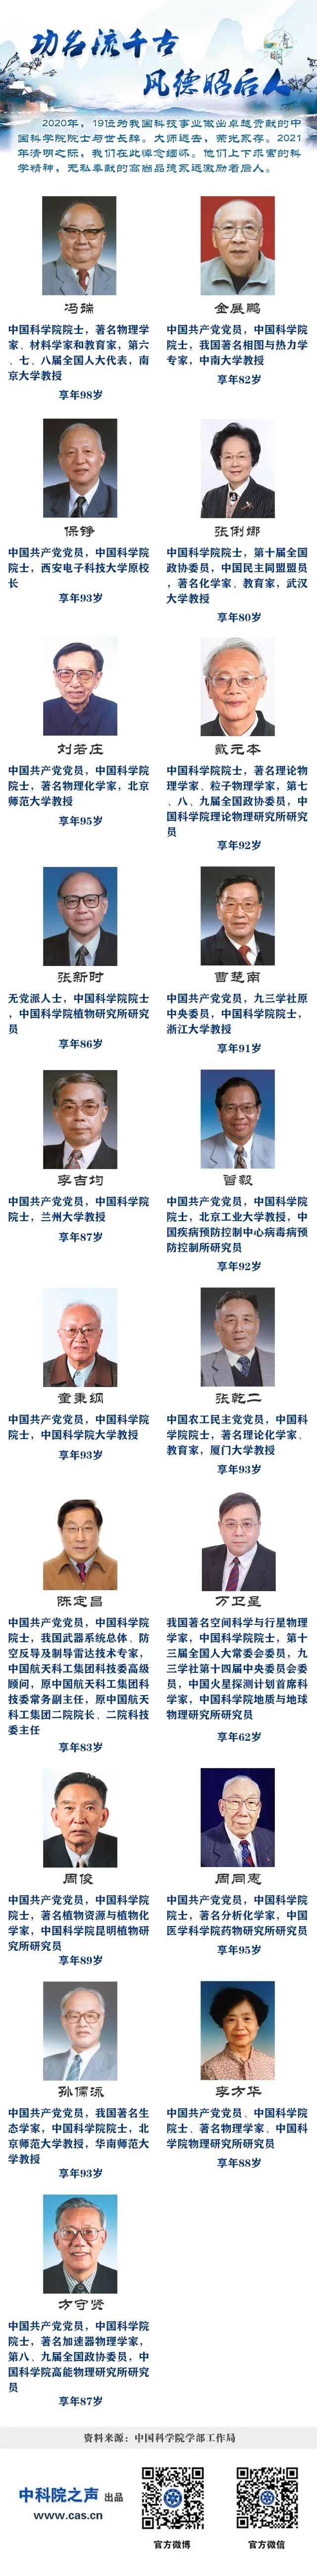 快讯|去年共有19位中国科学院院士去世